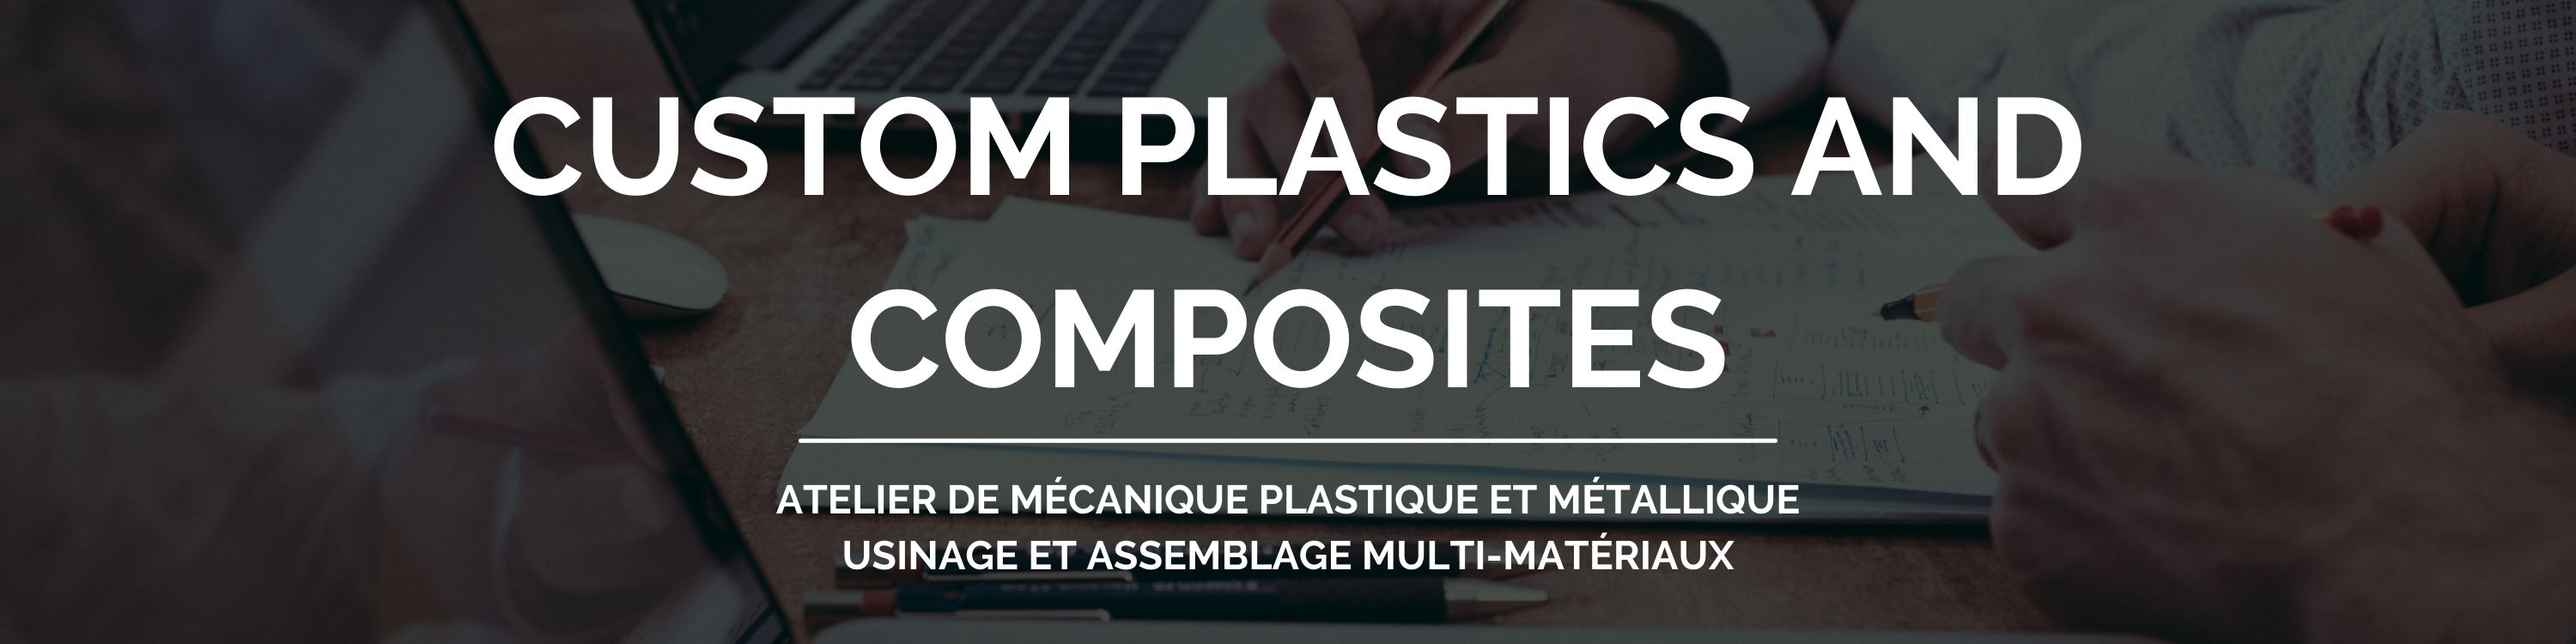 Custom Plastics And Composites - Atelier de mécanique plastique et métallique - Usinage et assemblage multi-matériaux